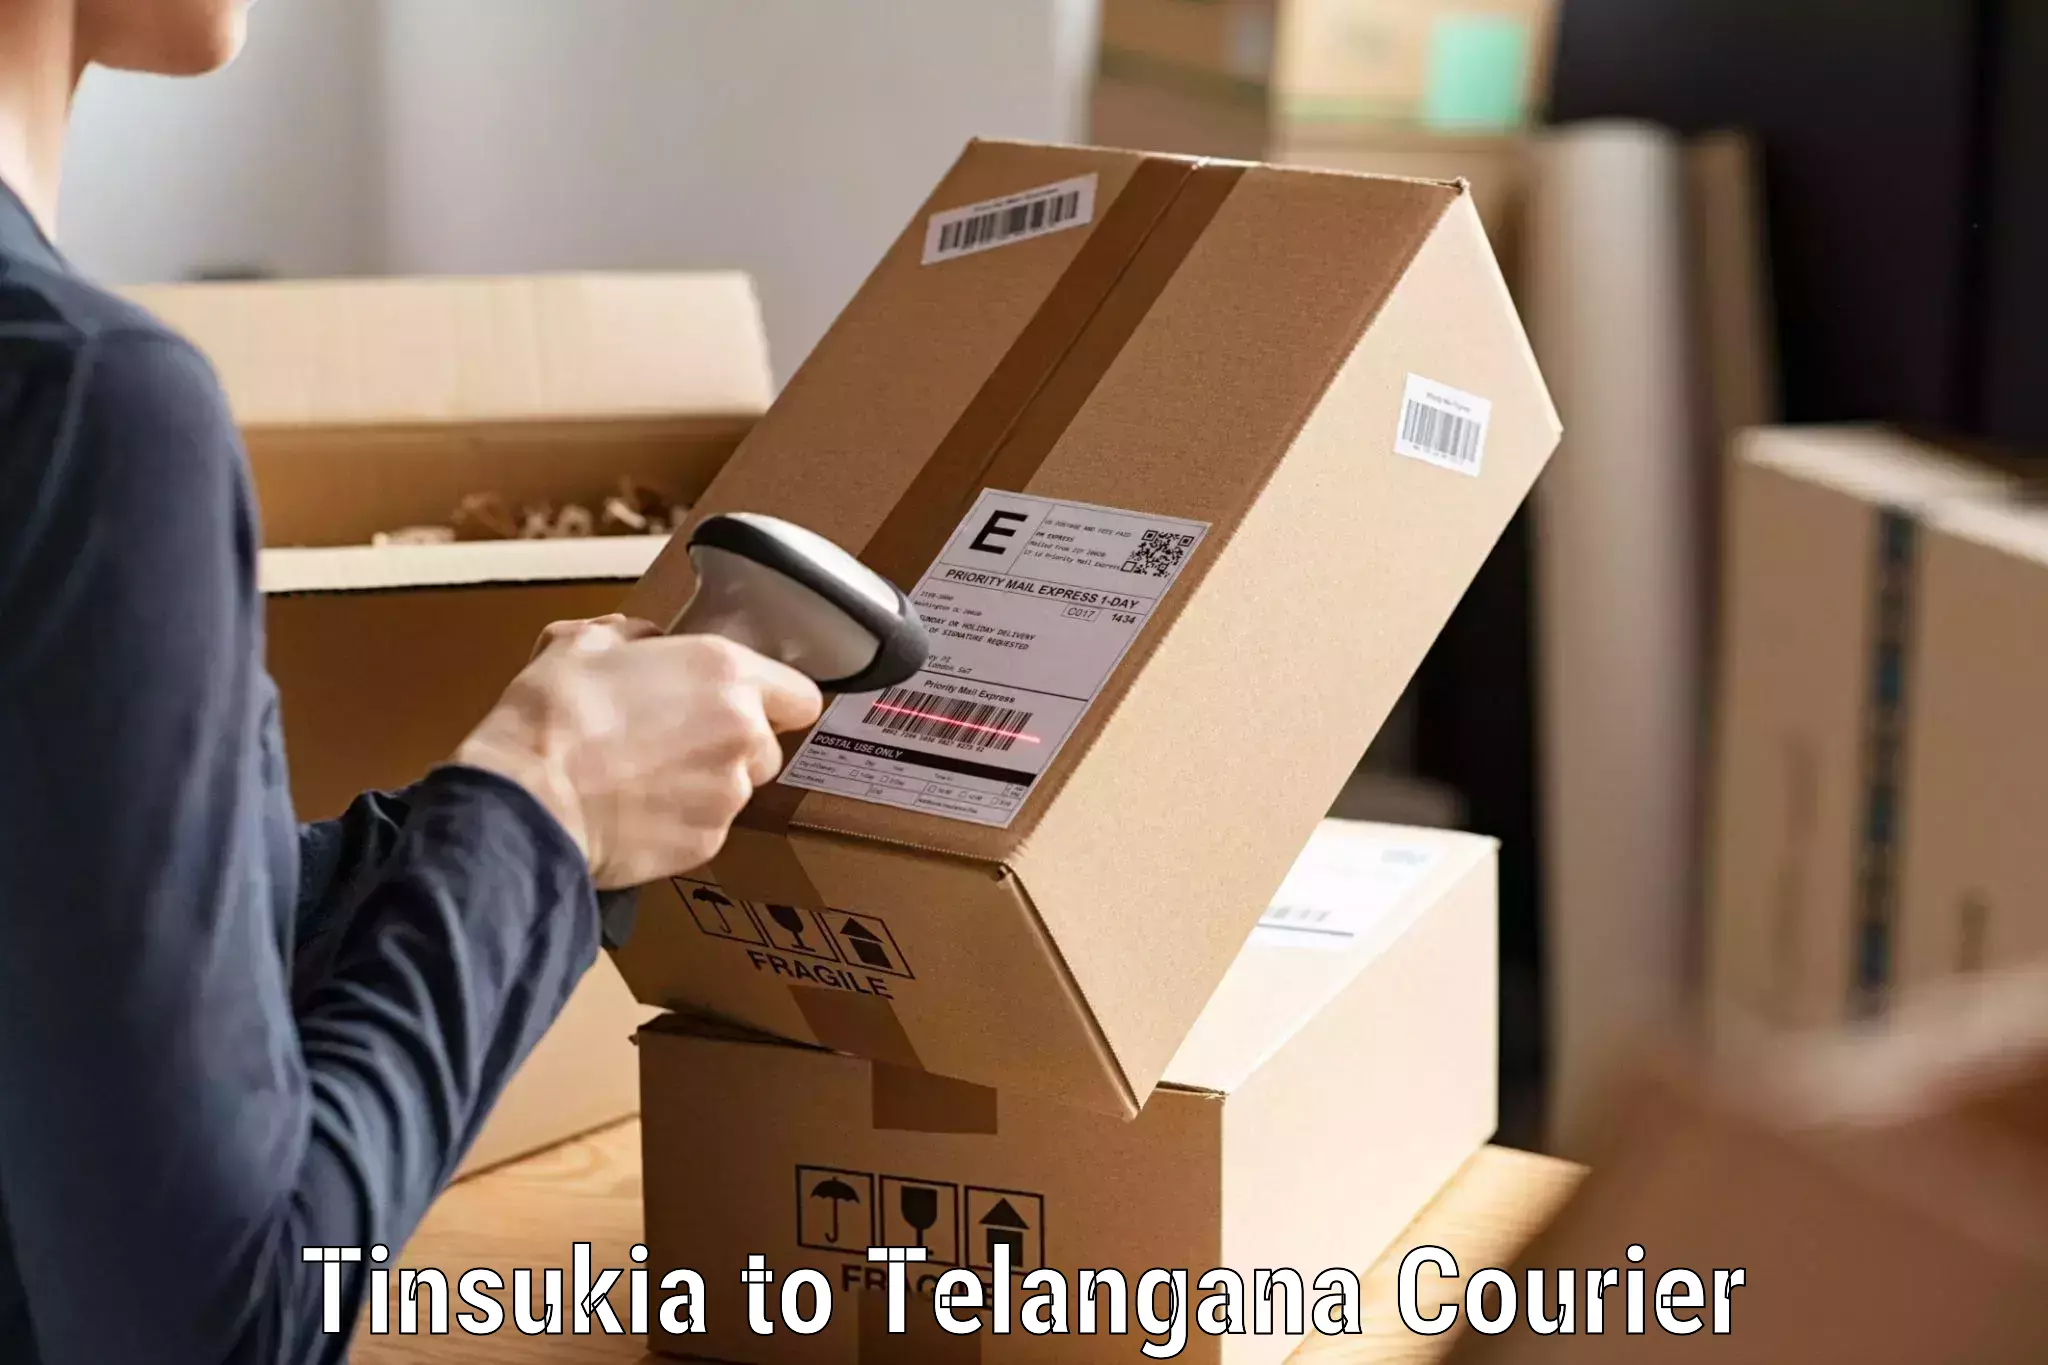 Advanced tracking systems Tinsukia to Thungathurthi